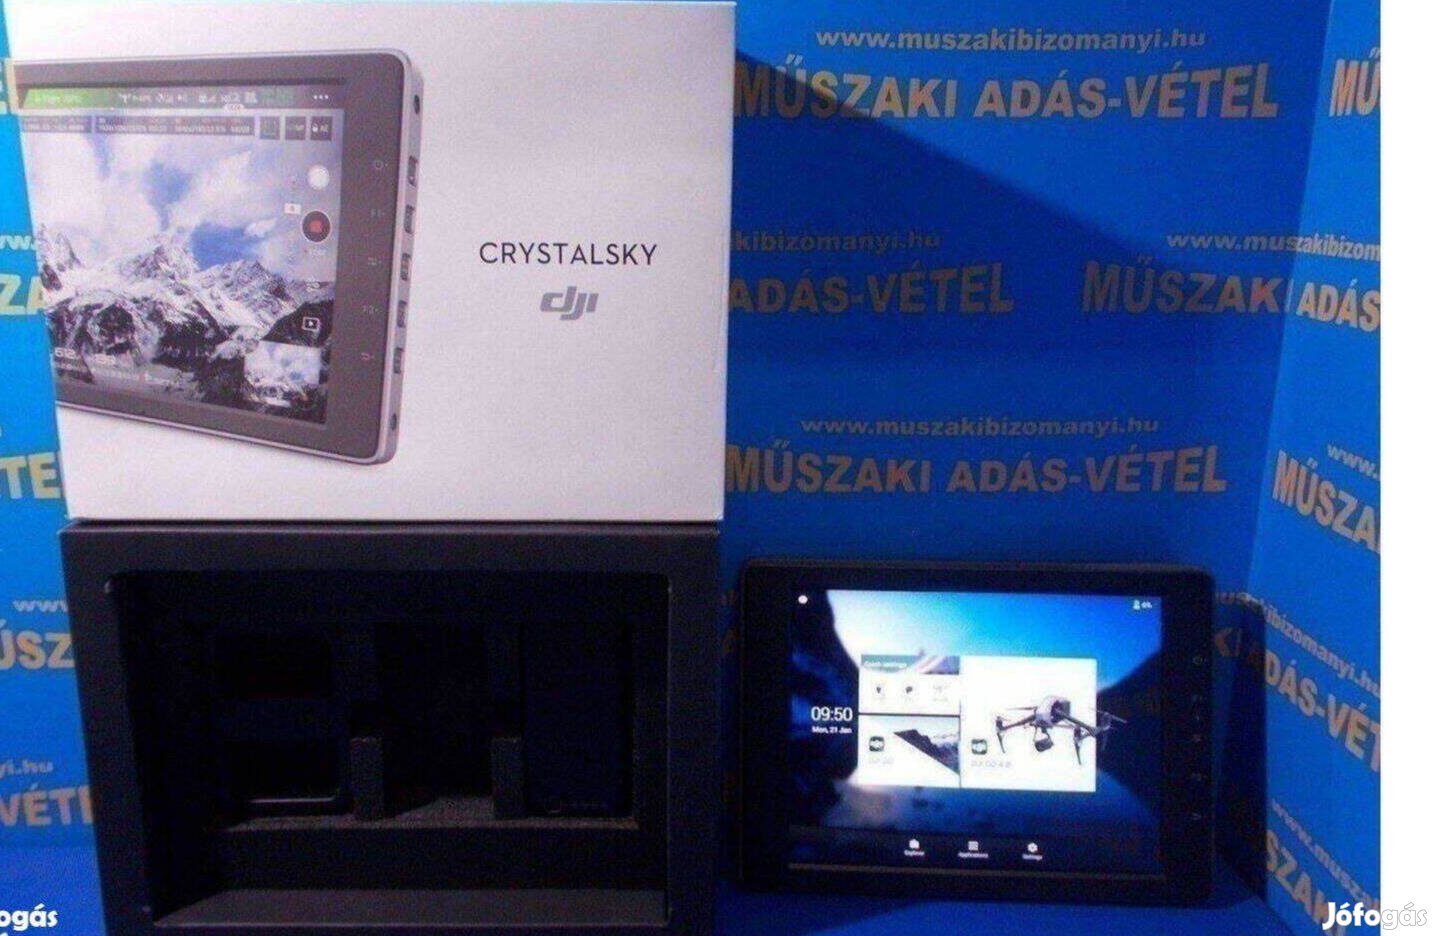 Dji Crystalsky ultrafényes monitor jótállással, 2 akkuval, töltővel, d